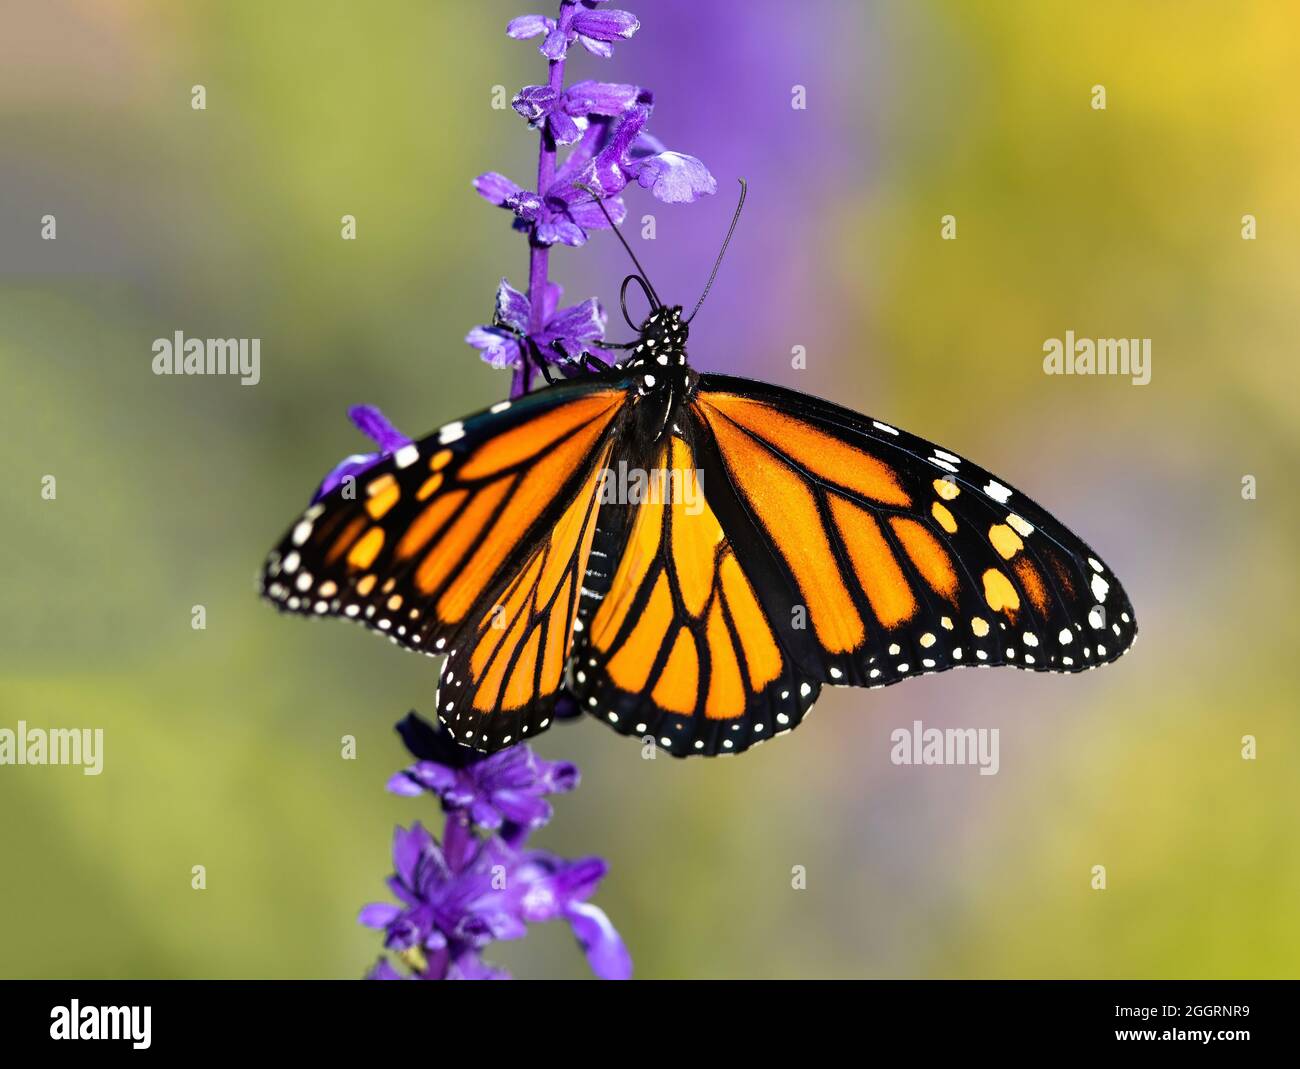 Primo piano di una farfalla monarca con ali aperte e lingua arricciata che si sposta su un gambo di fiori di lavanda con un fondo morbido. Foto Stock